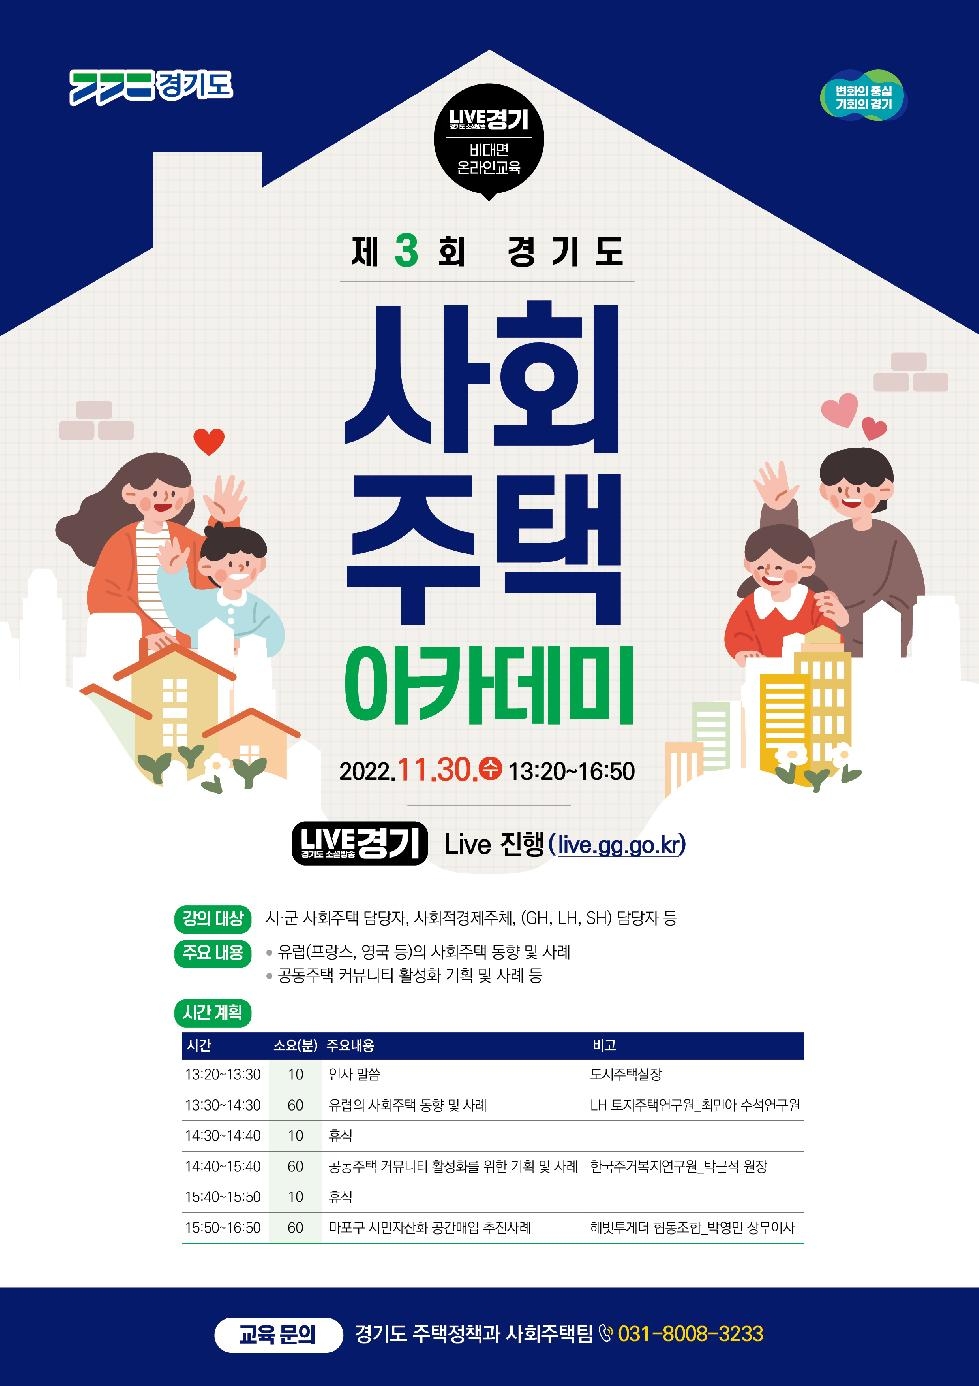 경기도,‘제3회 경기도 사회주택 아카데미’ 30일 개최. 커뮤니티 활성화